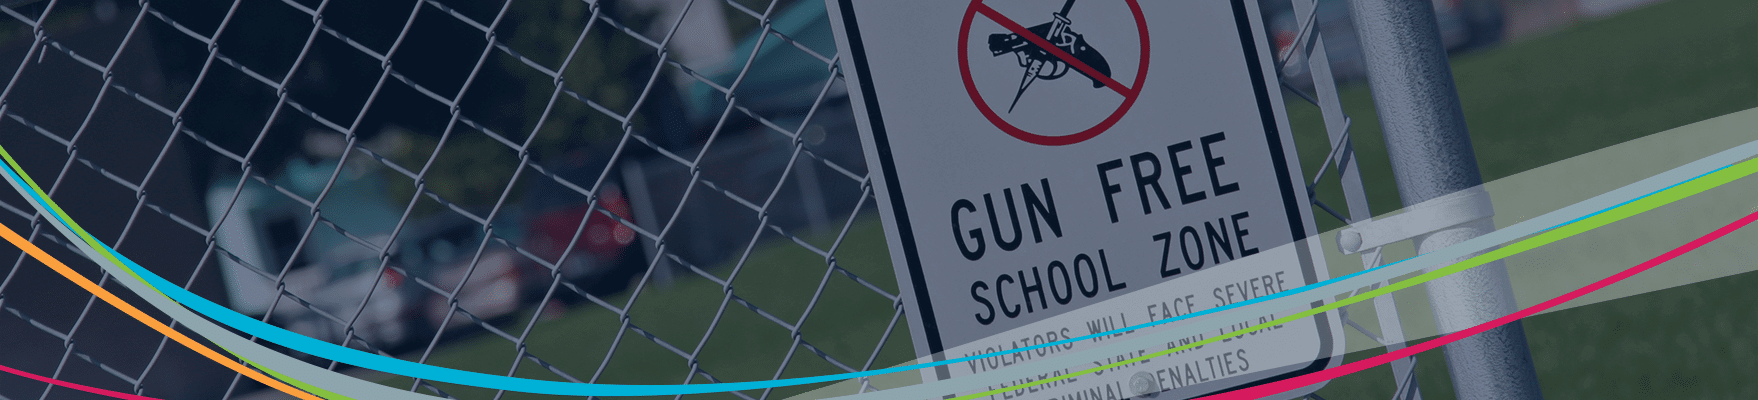 校内暴力防止ヘッダーのフェンスに銃規制ゾーンの標識